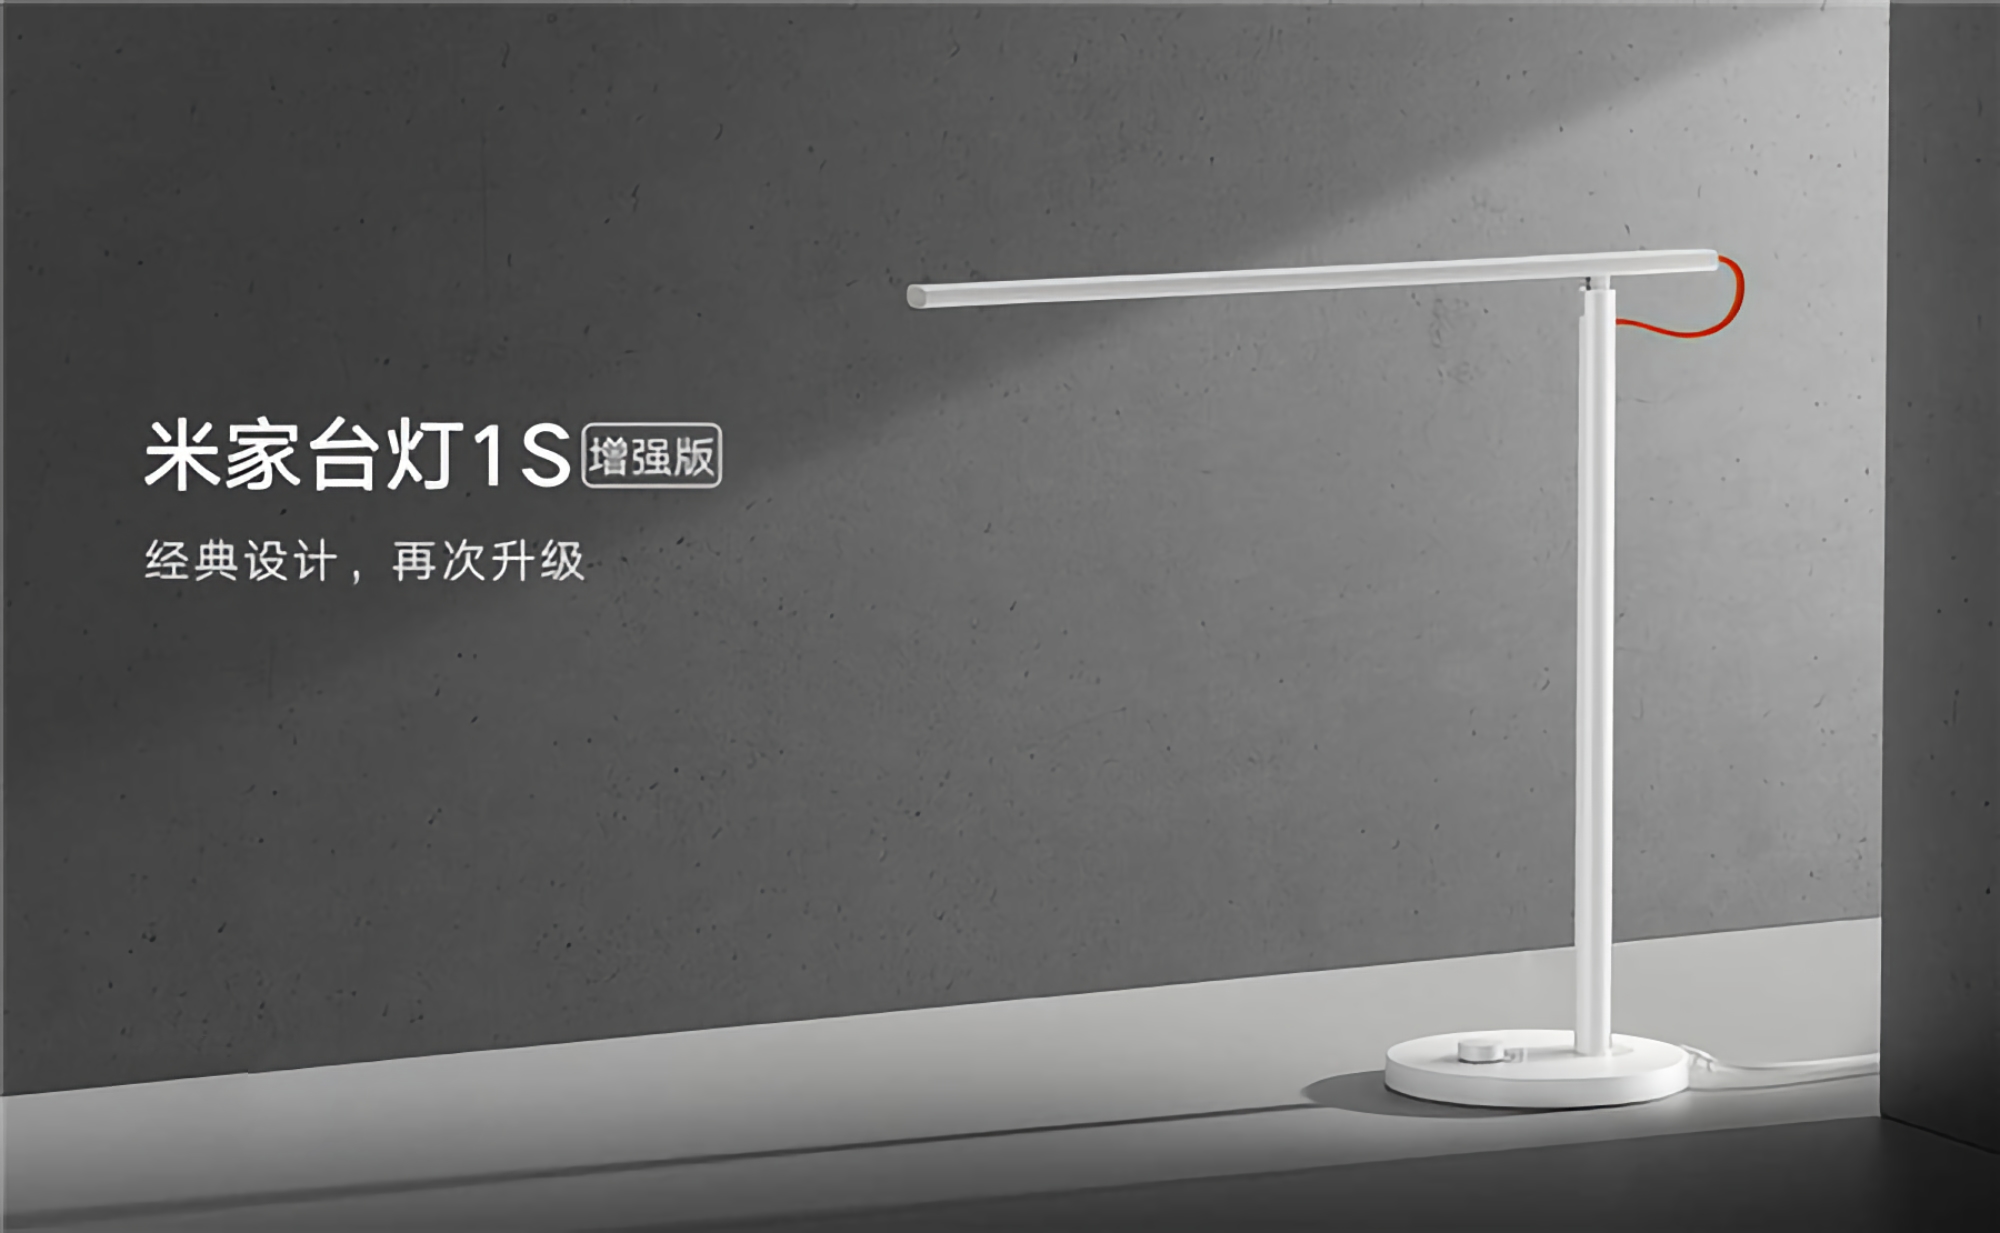 Xiaomi stellte eine intelligente Lampe MiJia Desk Lamp 1S Enhanced mit einem neuen LED-Modul und einem Preis von 30 US-Dollar vor